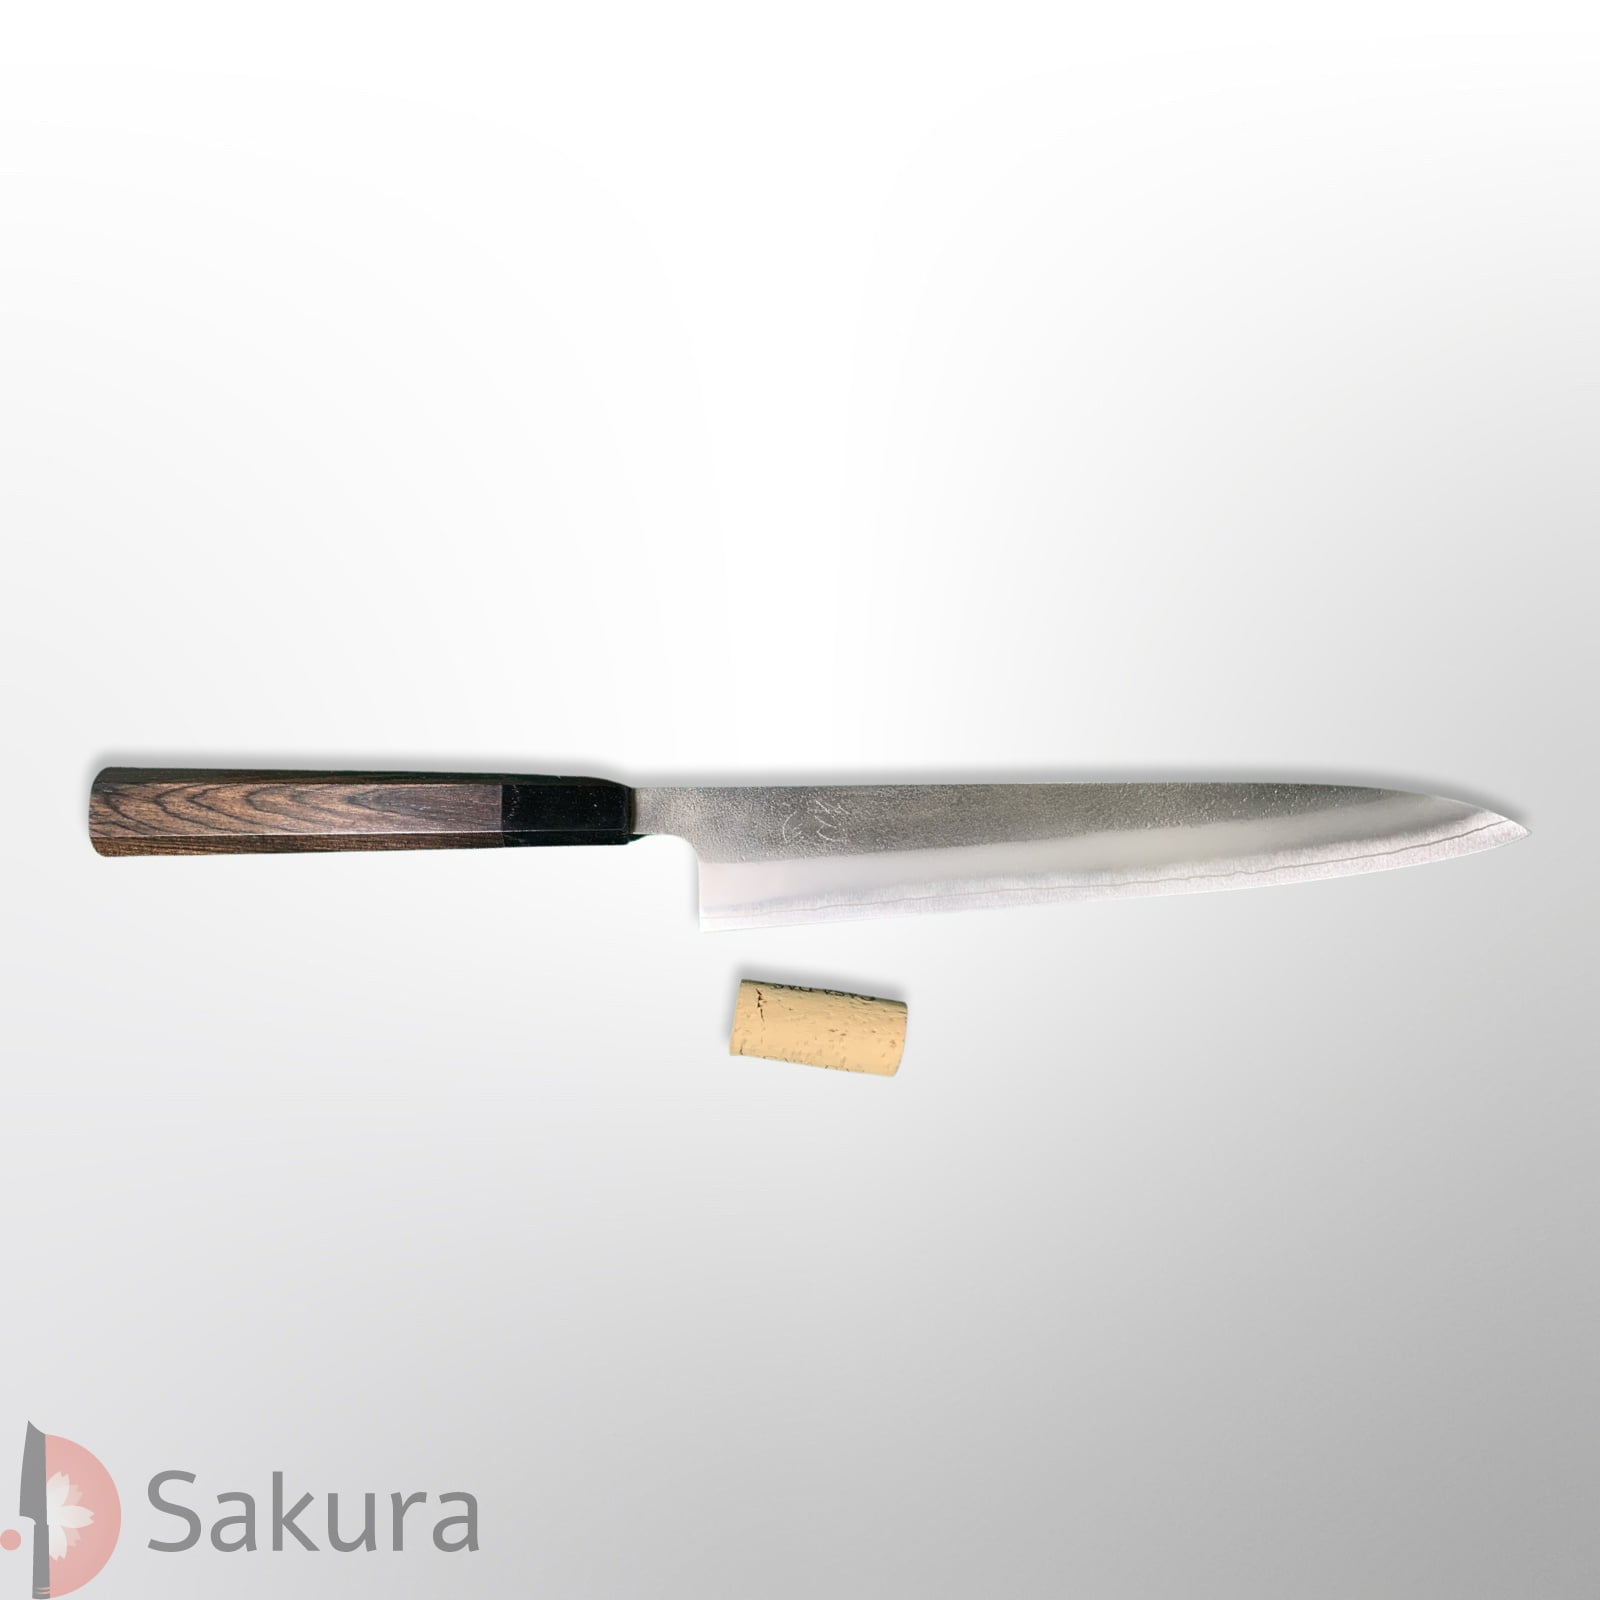 סכין חיתוך ופריסת בשר סוּגִּ’יהִיקִי 270מ״מ מחושלת בעבודת יד 3 שכבות: פלדת פחמן יפנית מתקדמת SKD גימור אל-חלד קורואוצ׳י מט חיספוס טבעי יושיקאנה יפן – SKYOSHSKDNSSUJI24024 (Copy)